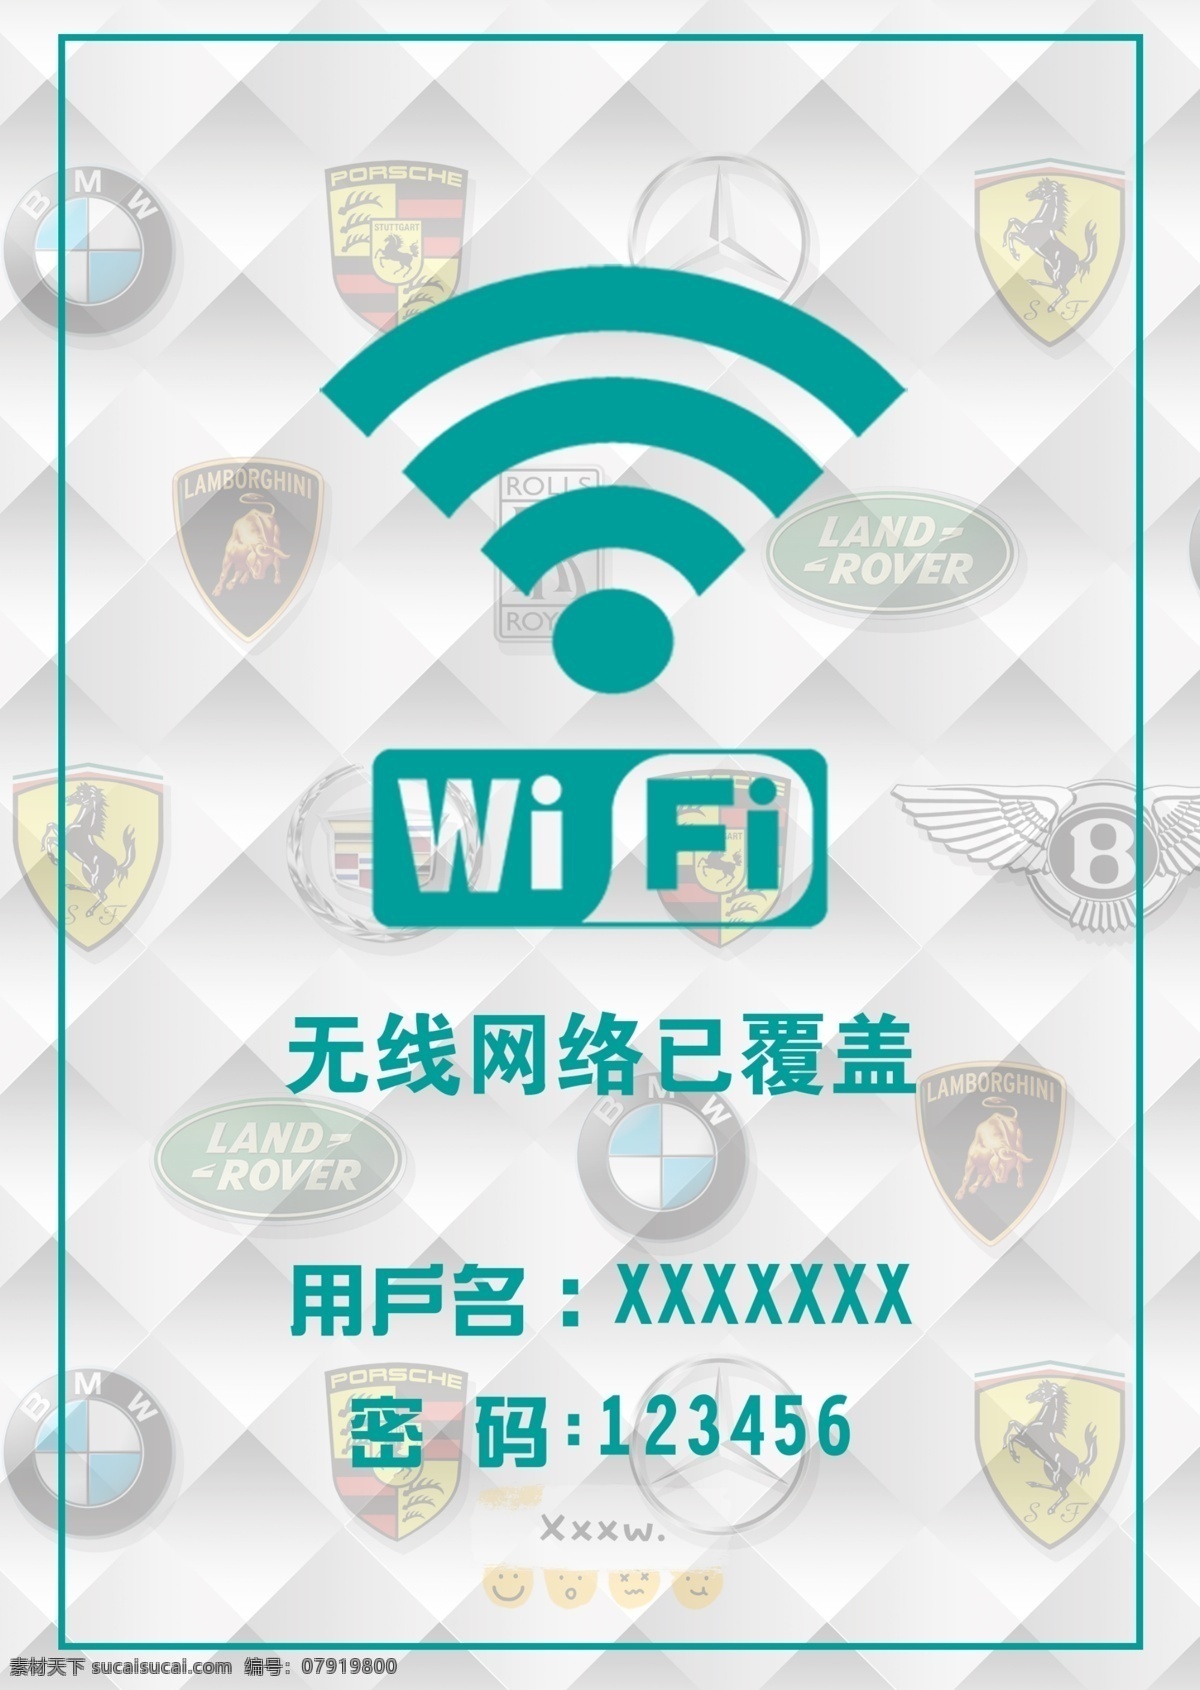 wifi网络 wifi 无线网络 已覆盖 账号 连接